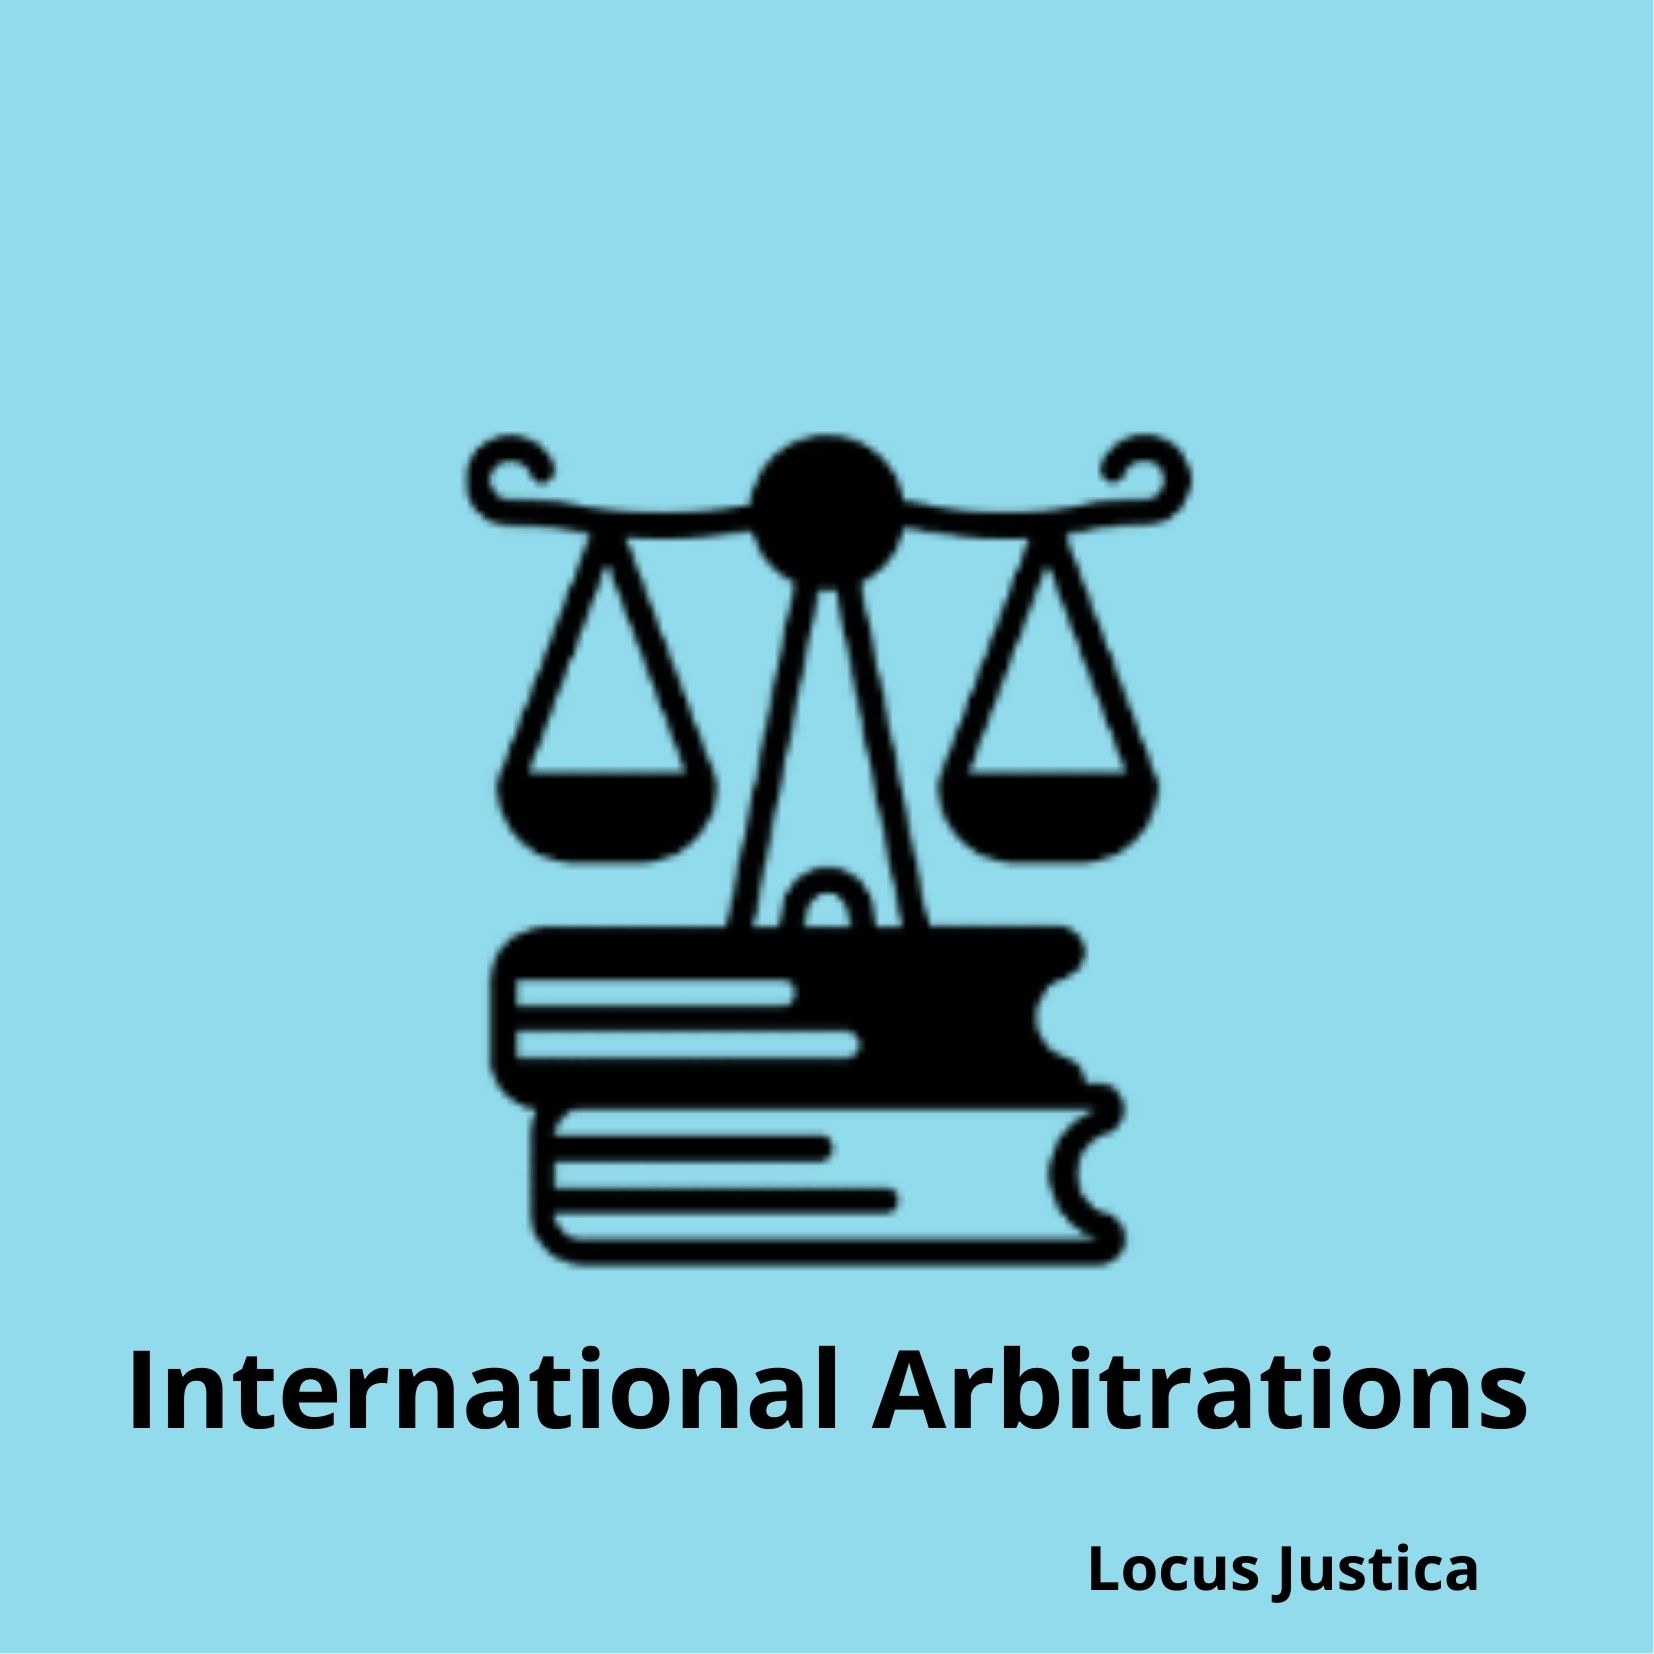 International Arbitrations